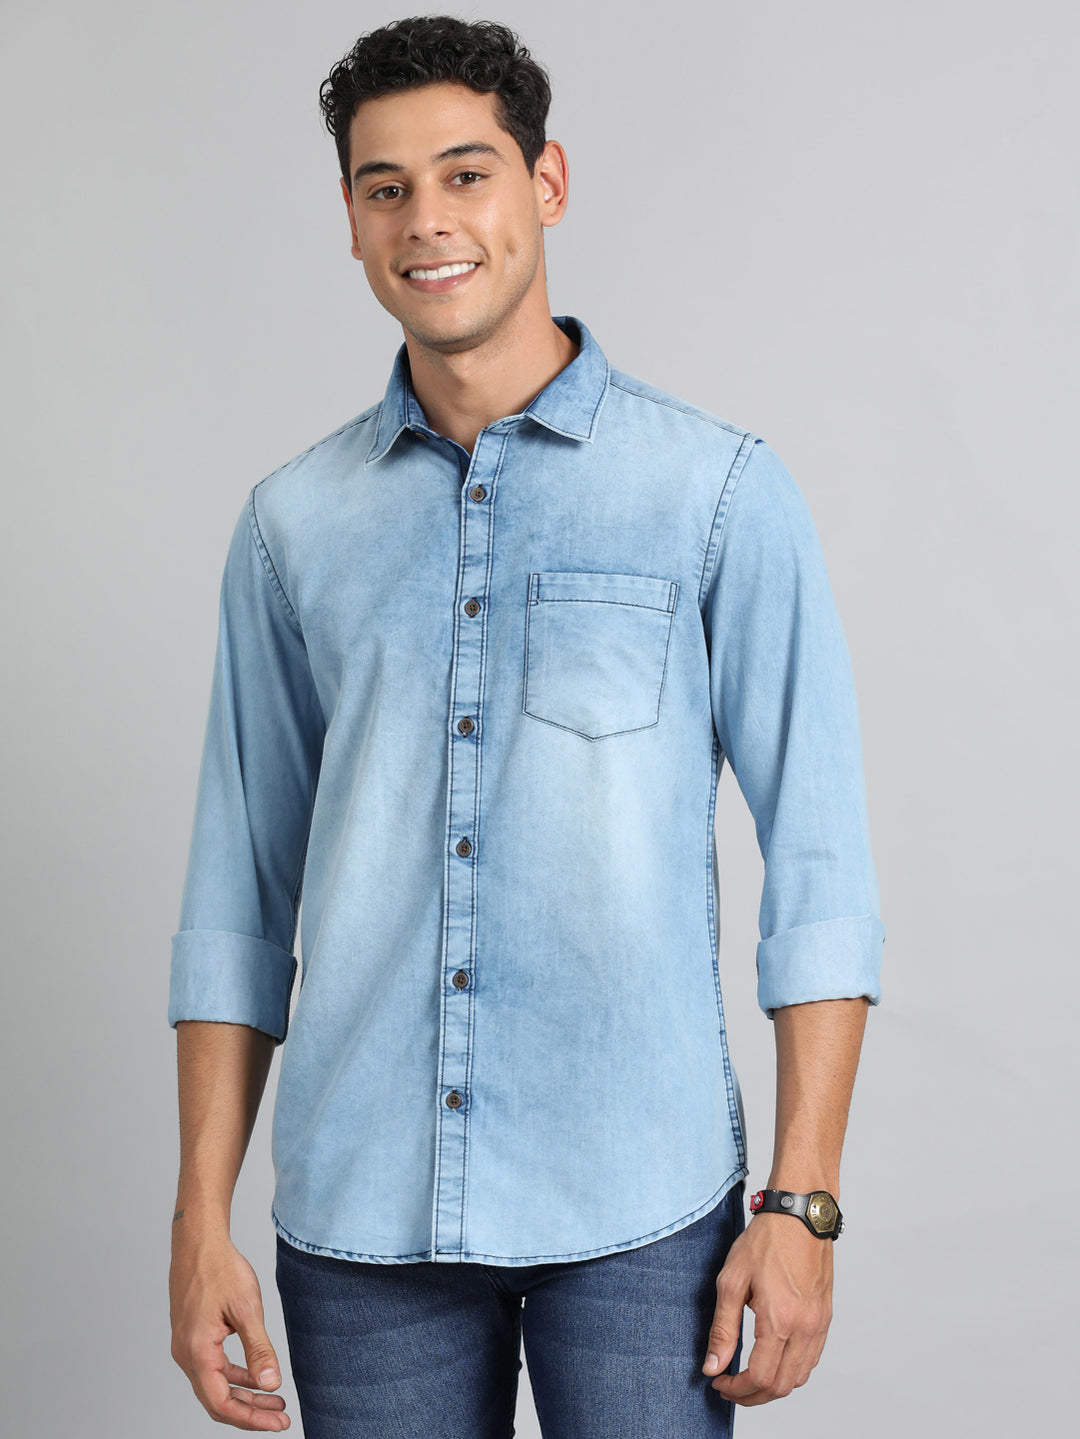 Slate Blue Denim Shirt Solid Shirt Bushirt   